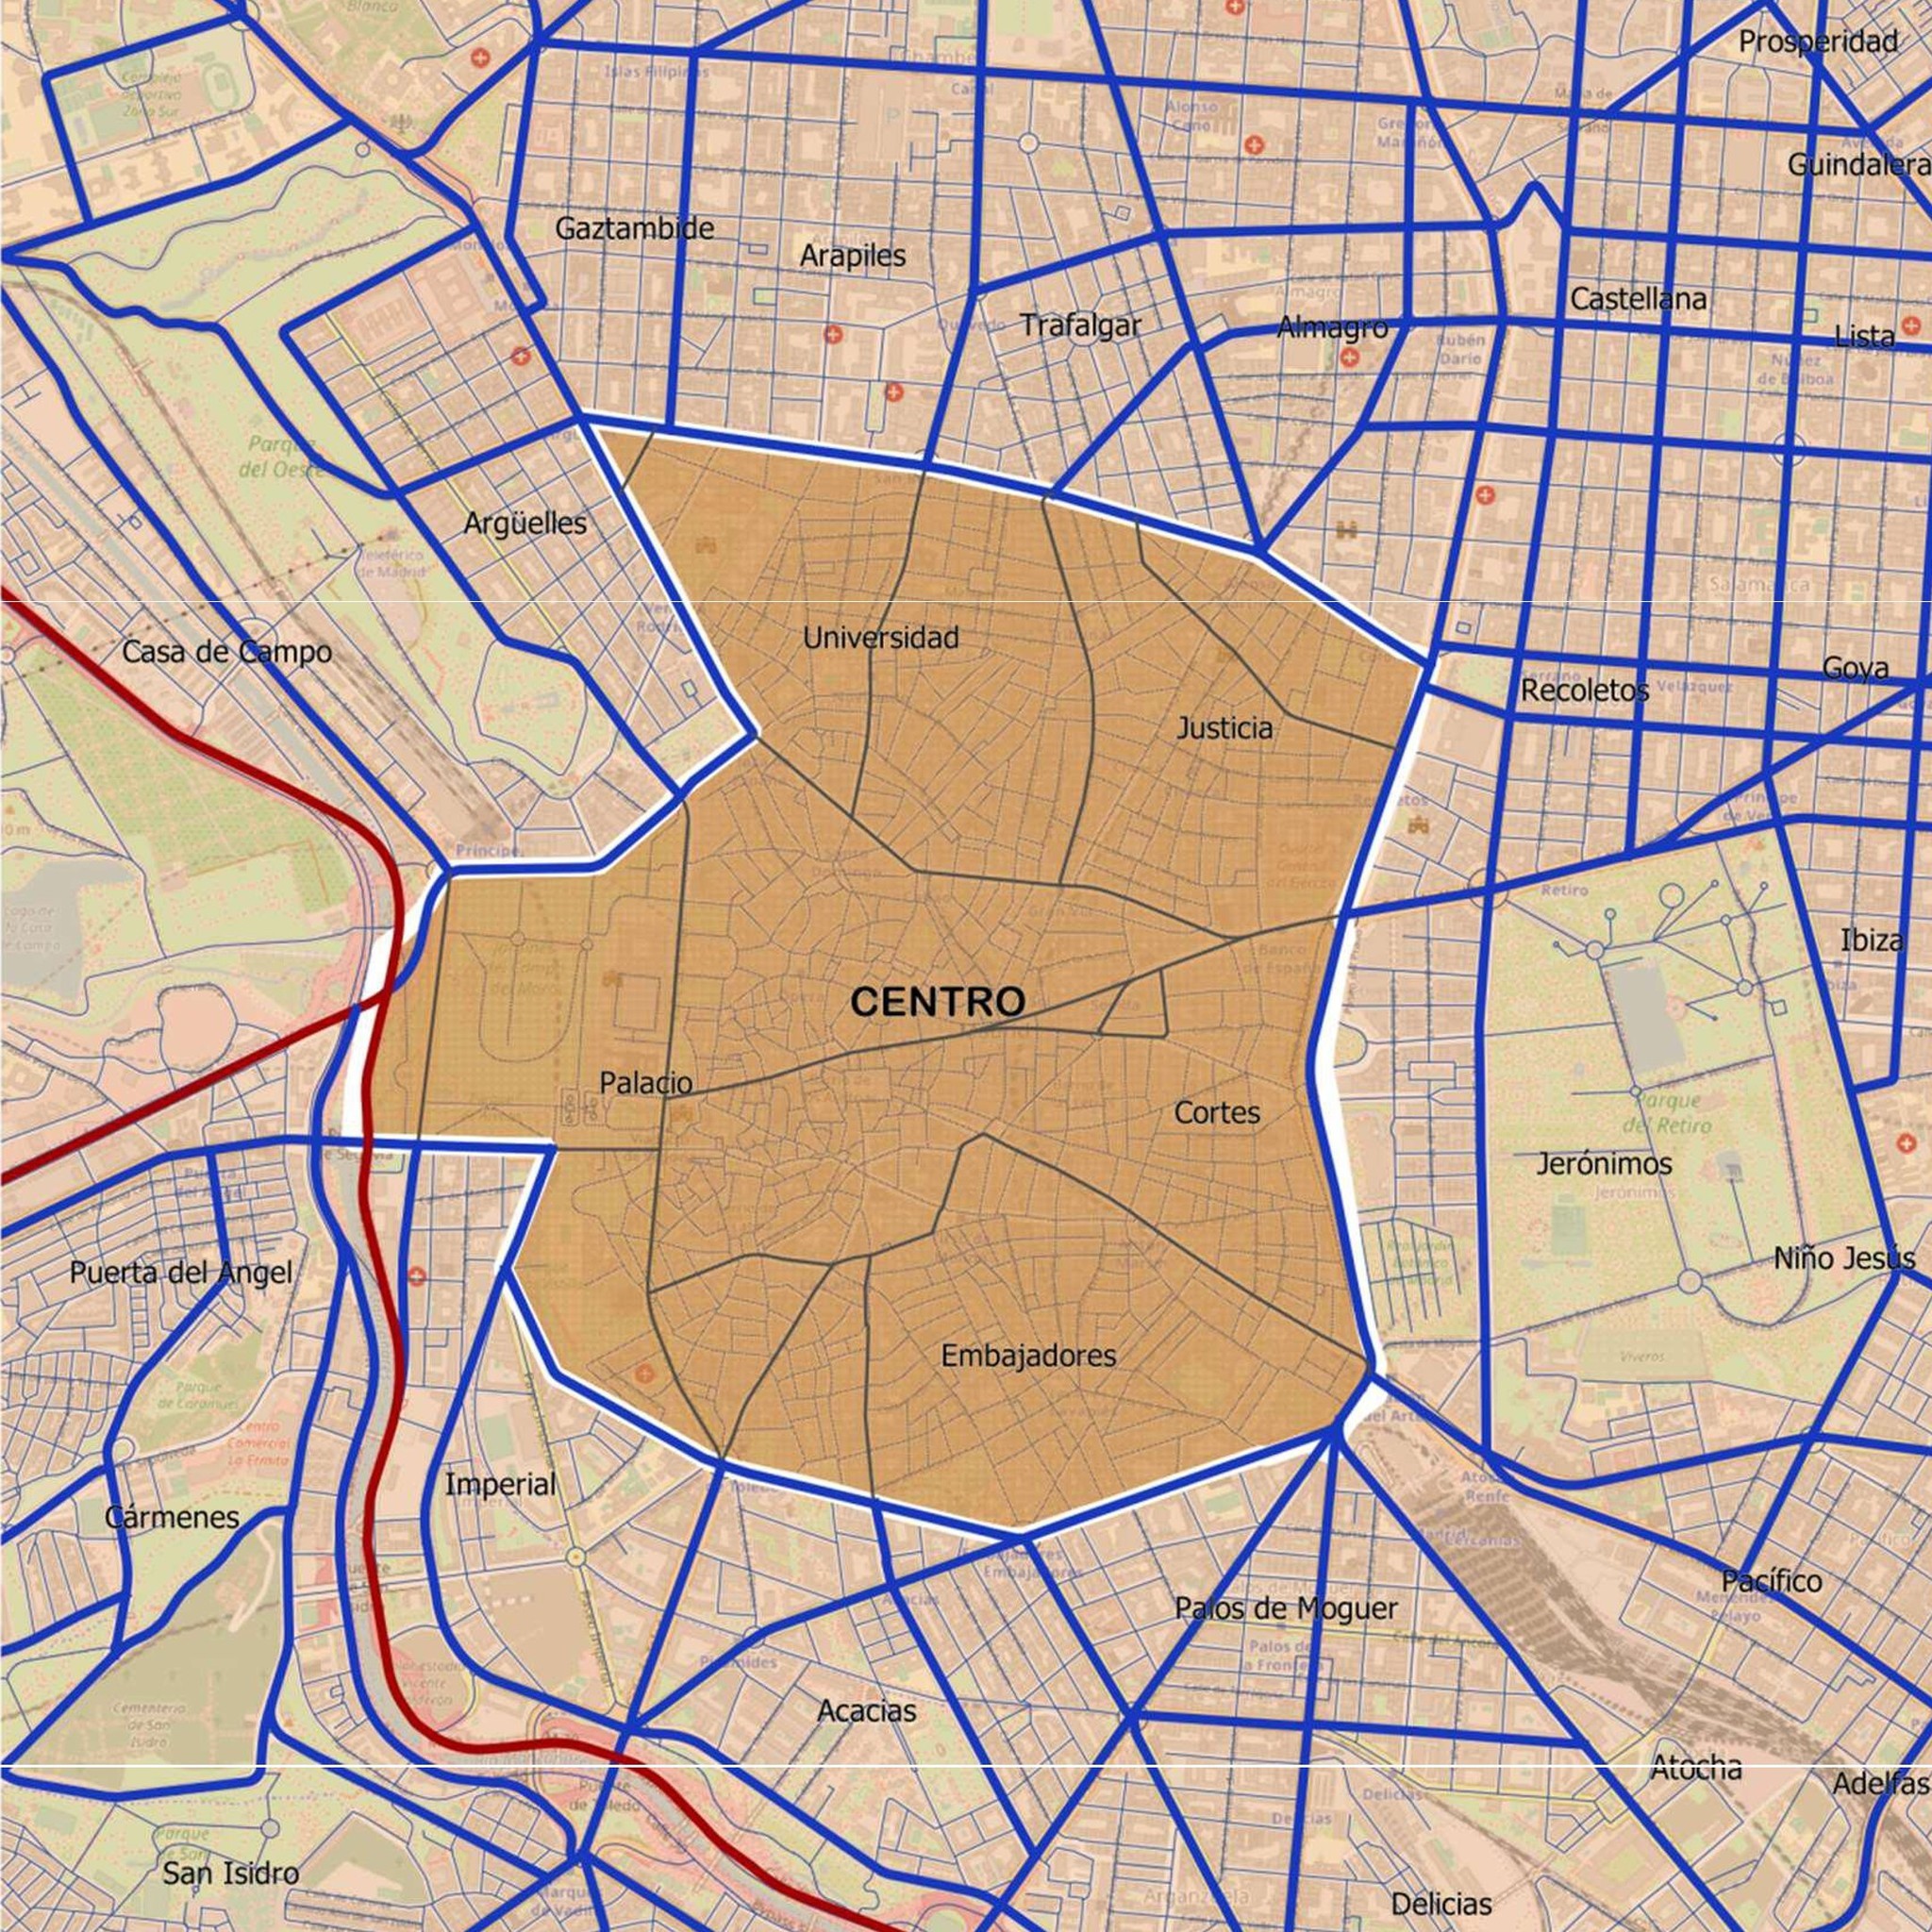 Mapa Madrid Central - Madrid 360 - Madrid ZBE - calendario de restricciones - Ordenanza de Movilidad - Ayuntamiento de Madrid